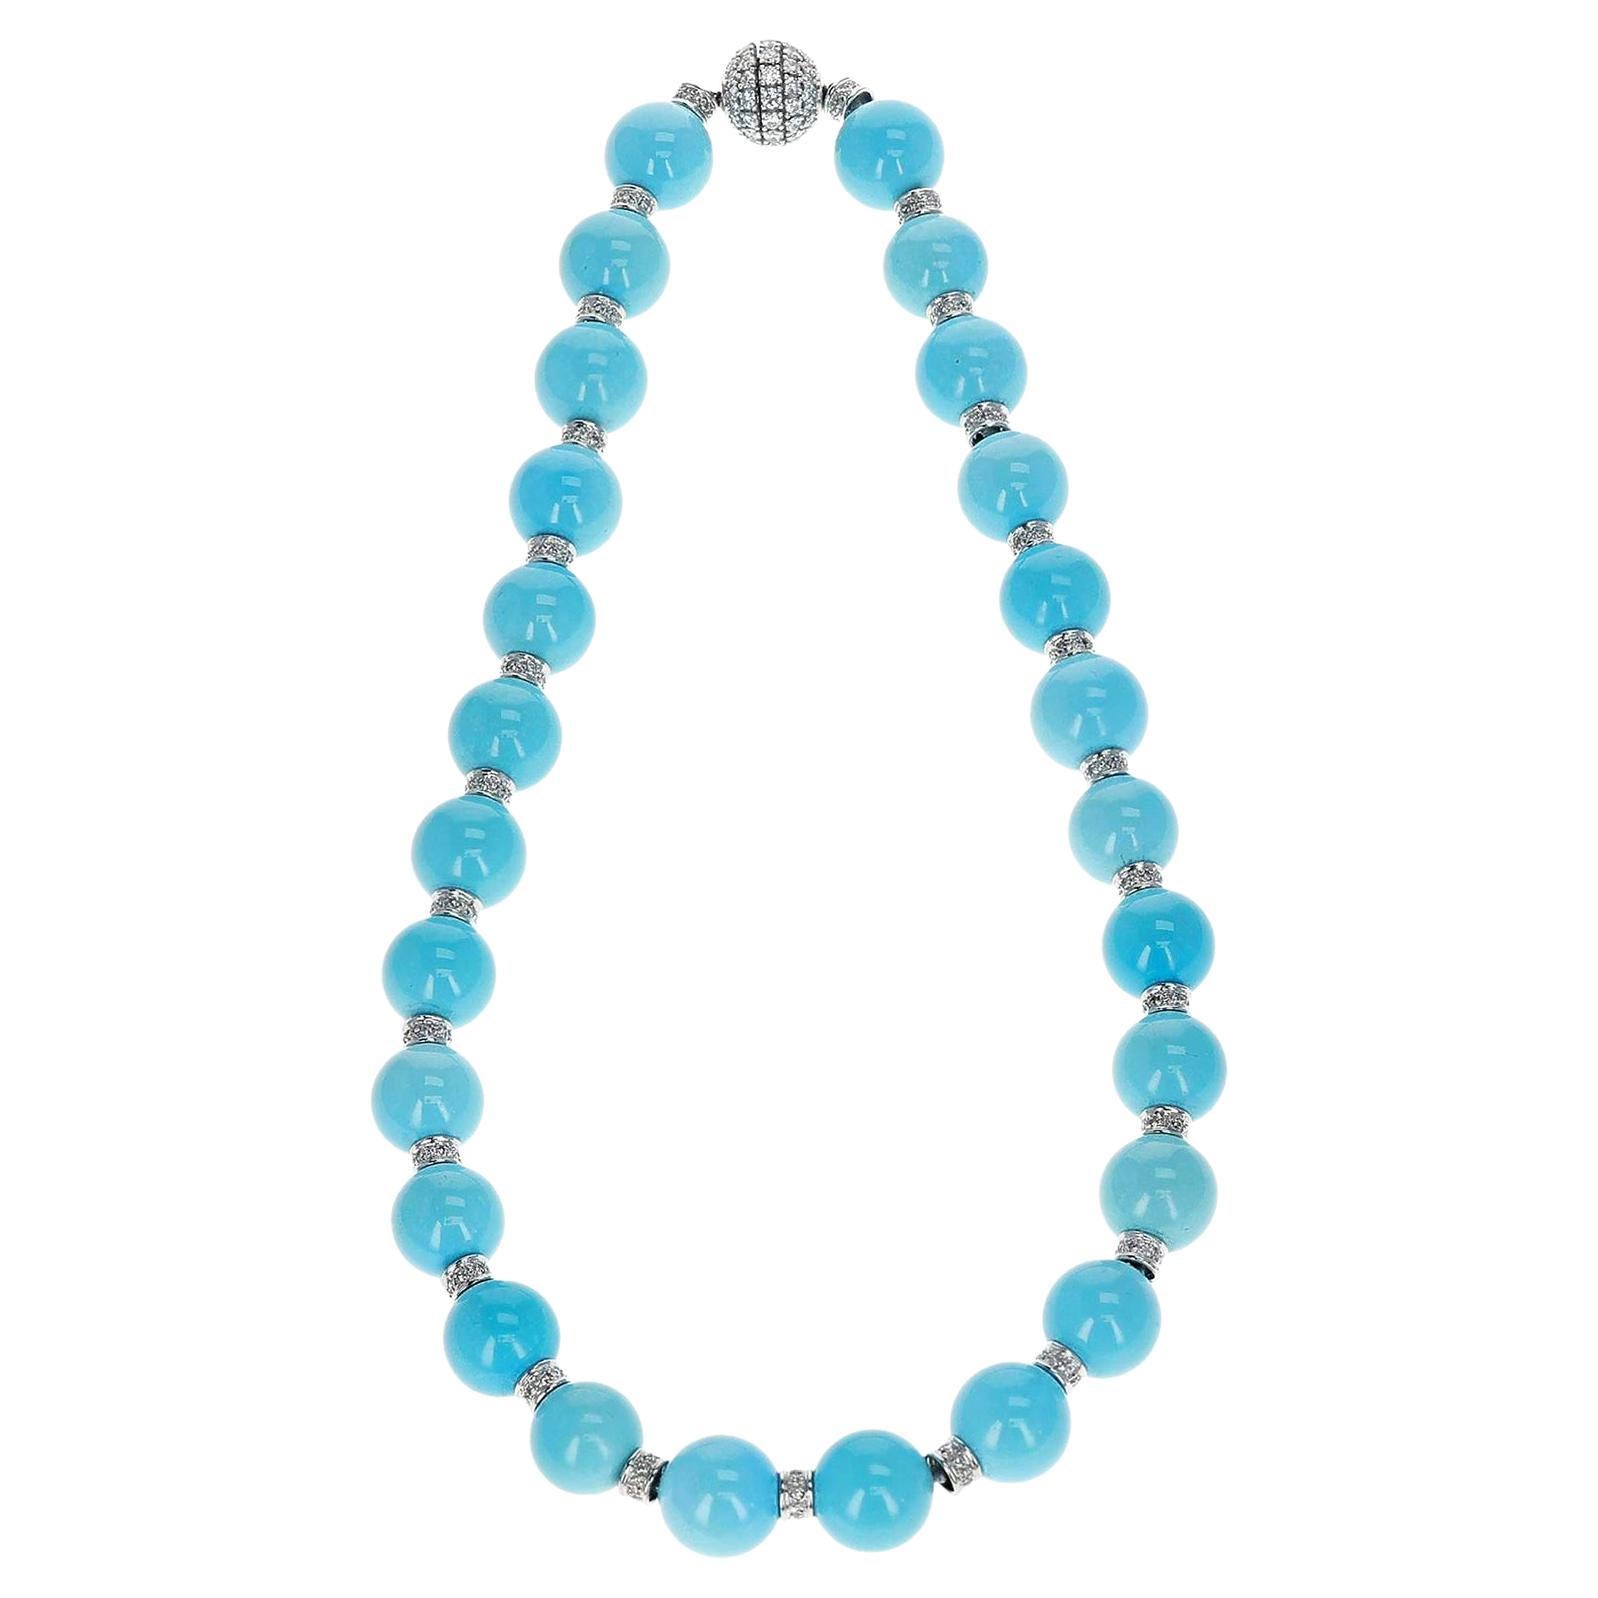 Turquoise Round Beads with Diamond Discs, 18k 